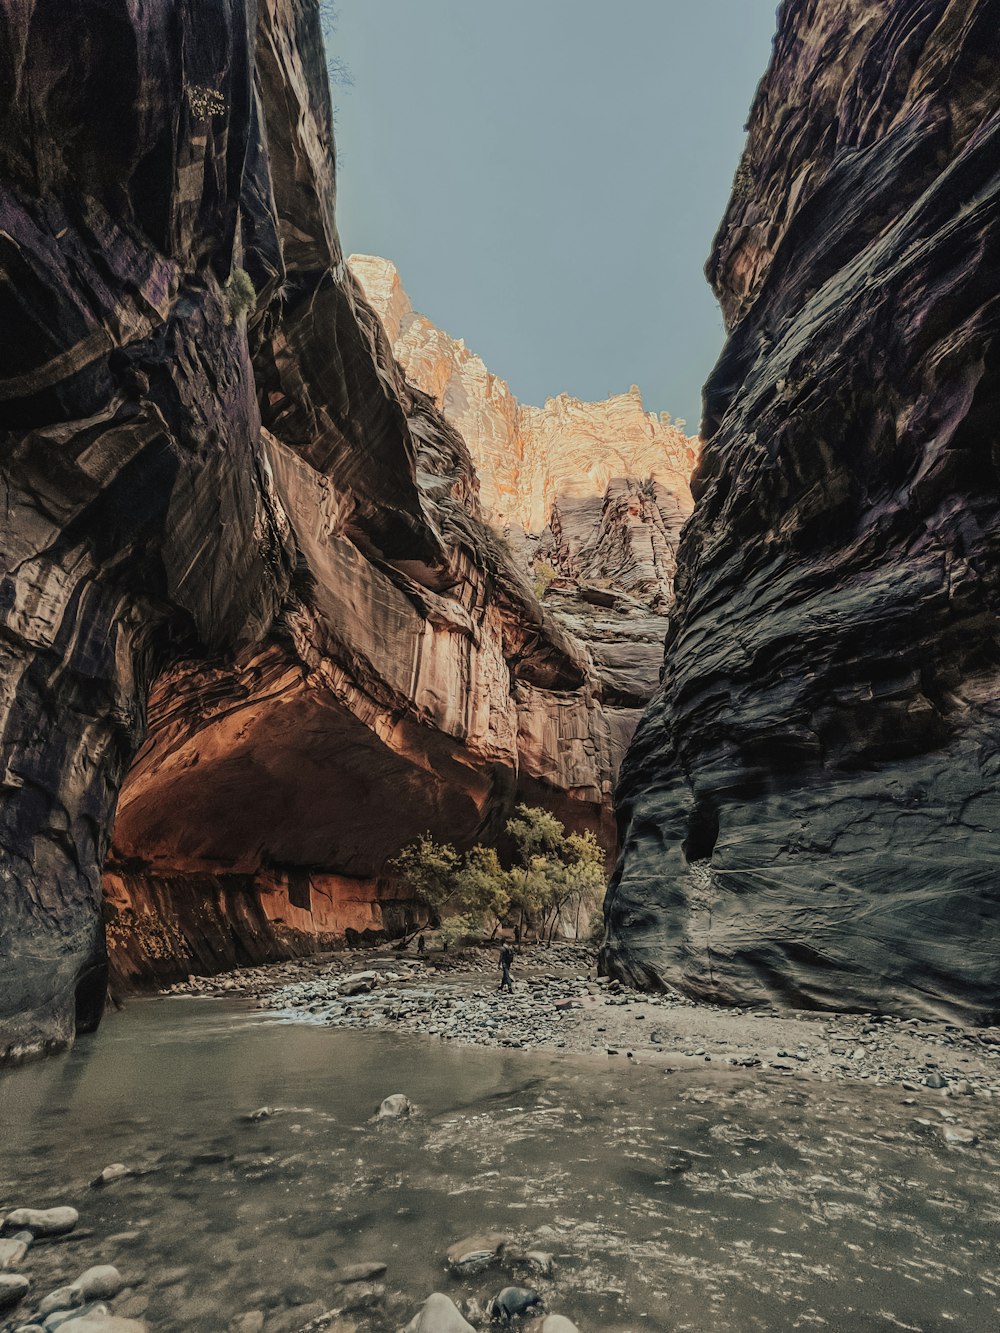 Un homme debout au milieu d’un canyon étroit